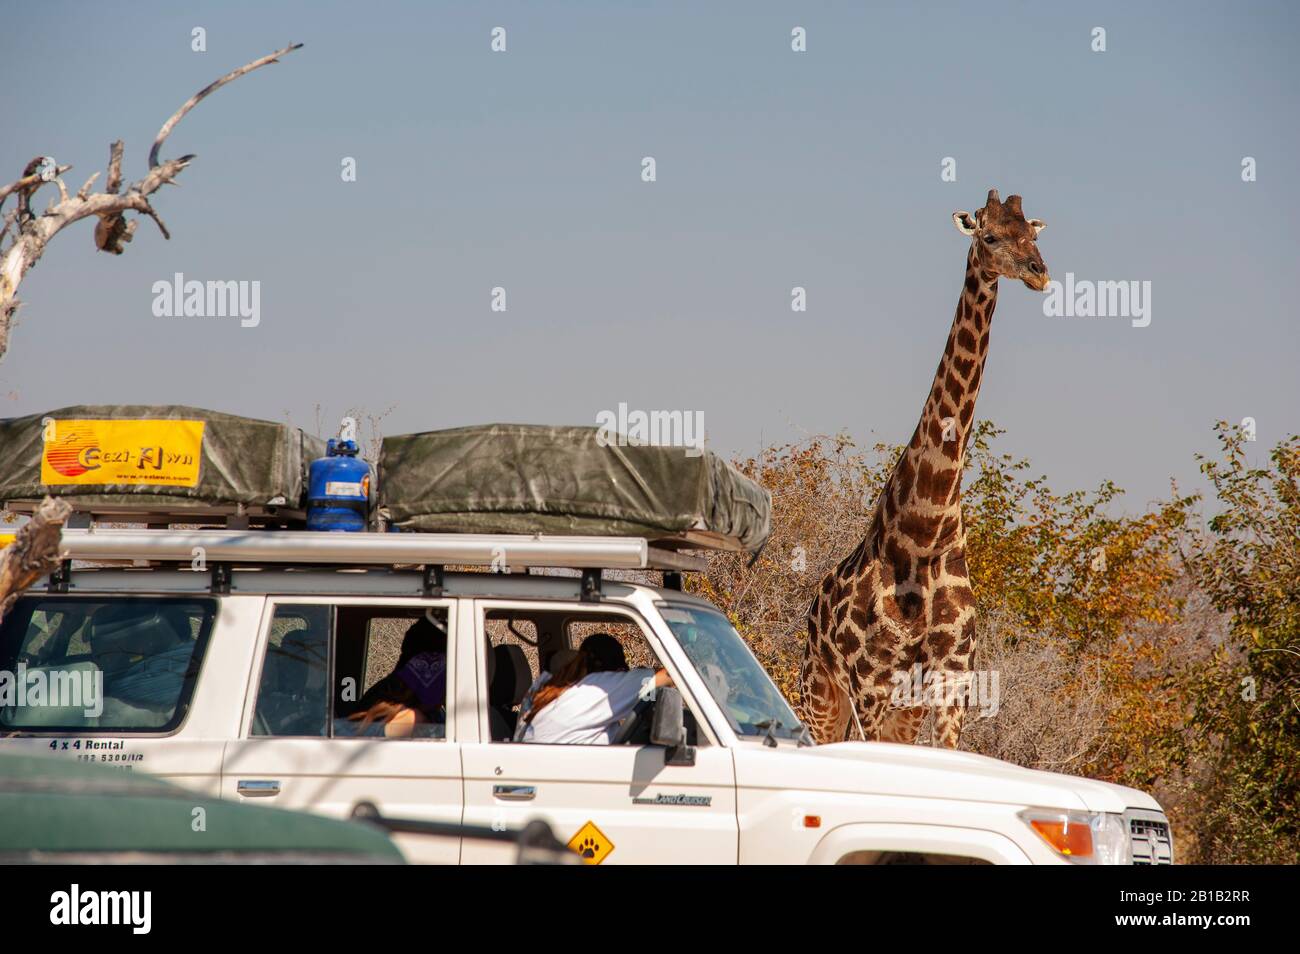 Giraffe près d'une voiture de safari dans un trou d'eau, Parc national d'Etosha, Namibie Banque D'Images